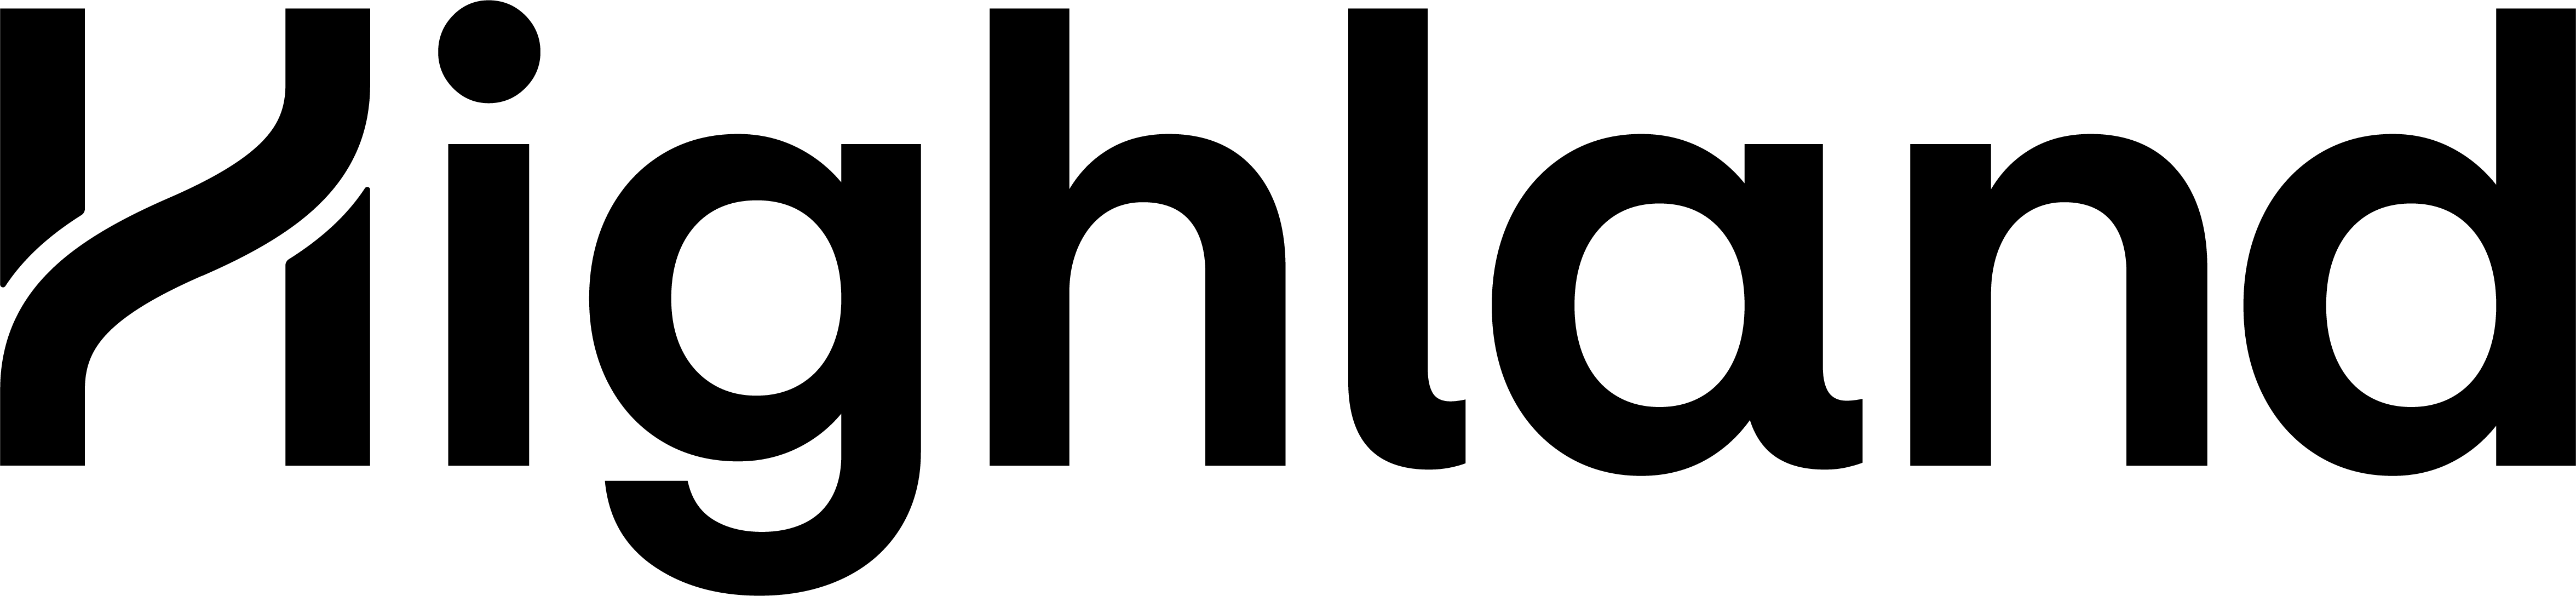 highland-logo